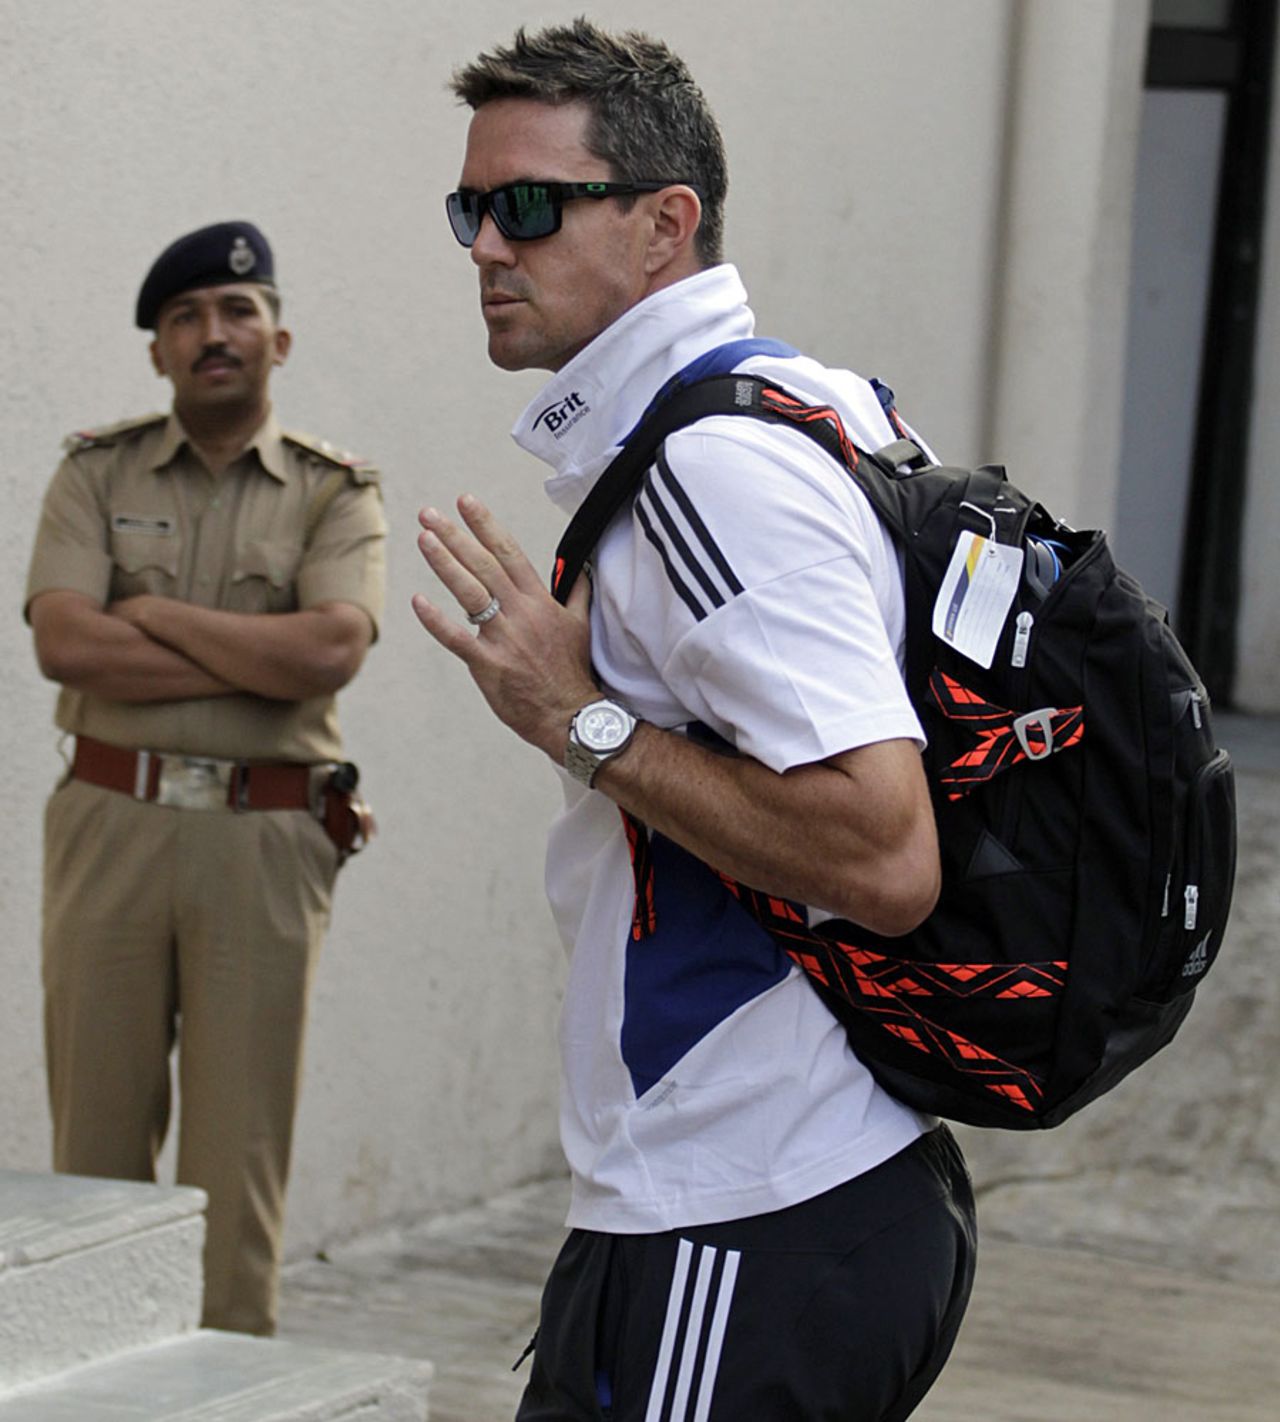 Kevin Pietersen arrives in Ahmedabad, November 7, 2012